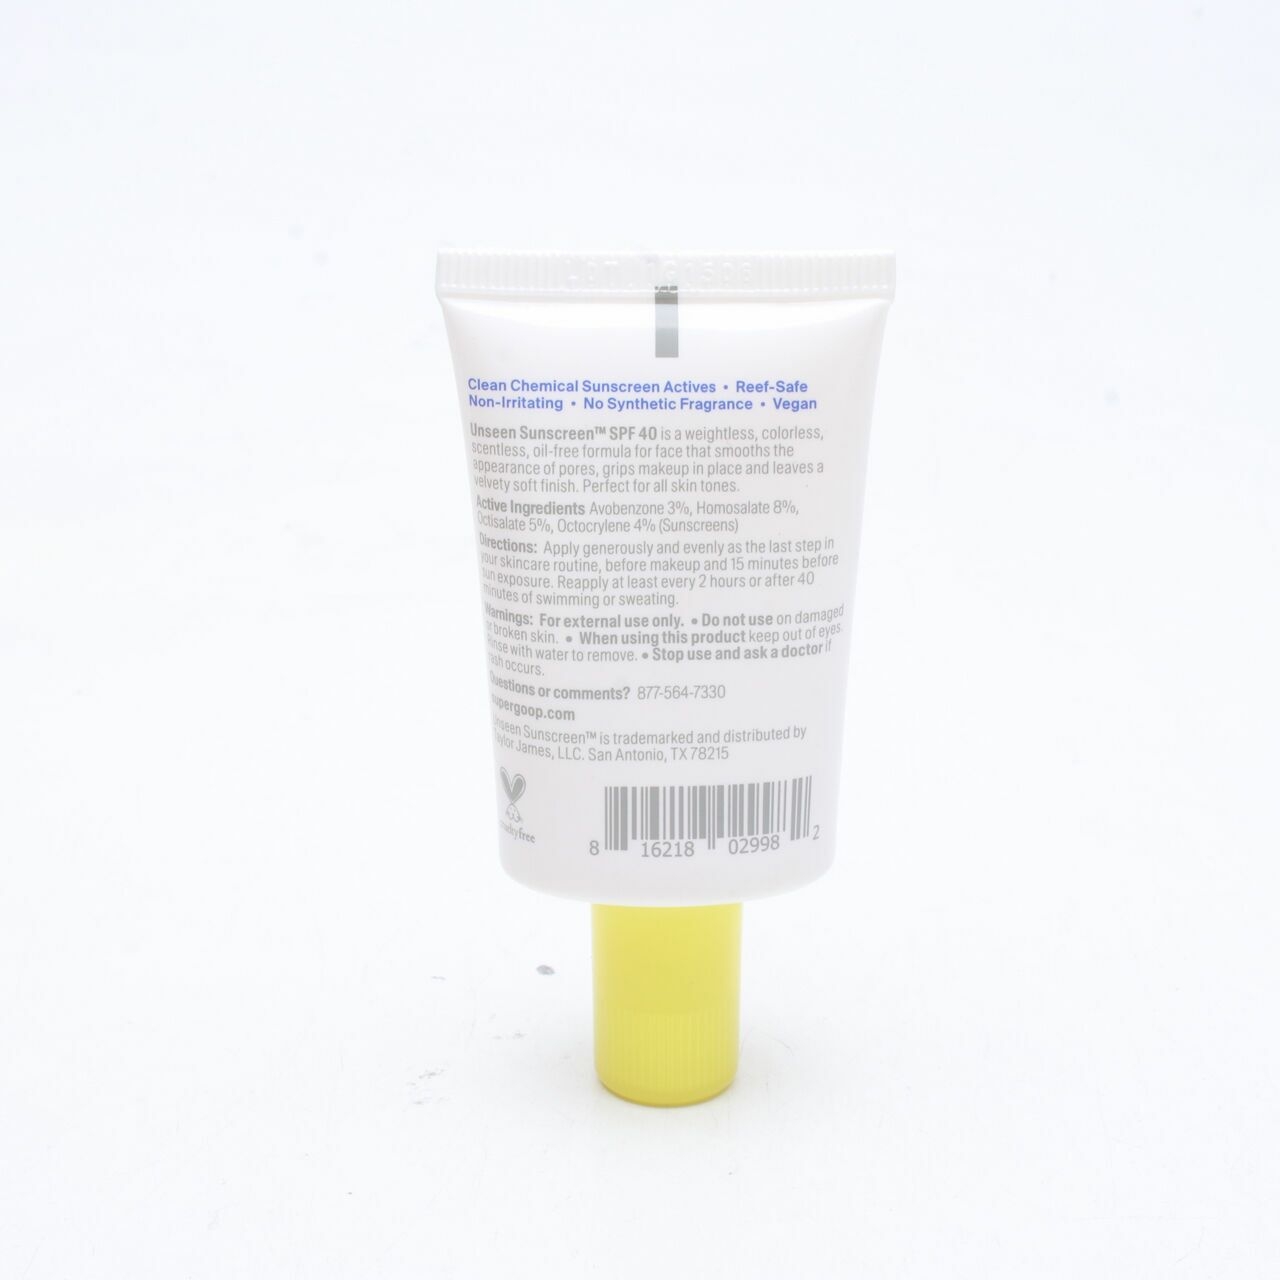 Supergoop Unseen Sunscreen Broad Spectrum Sunscreen SPF 40 PA+++ Skin Care